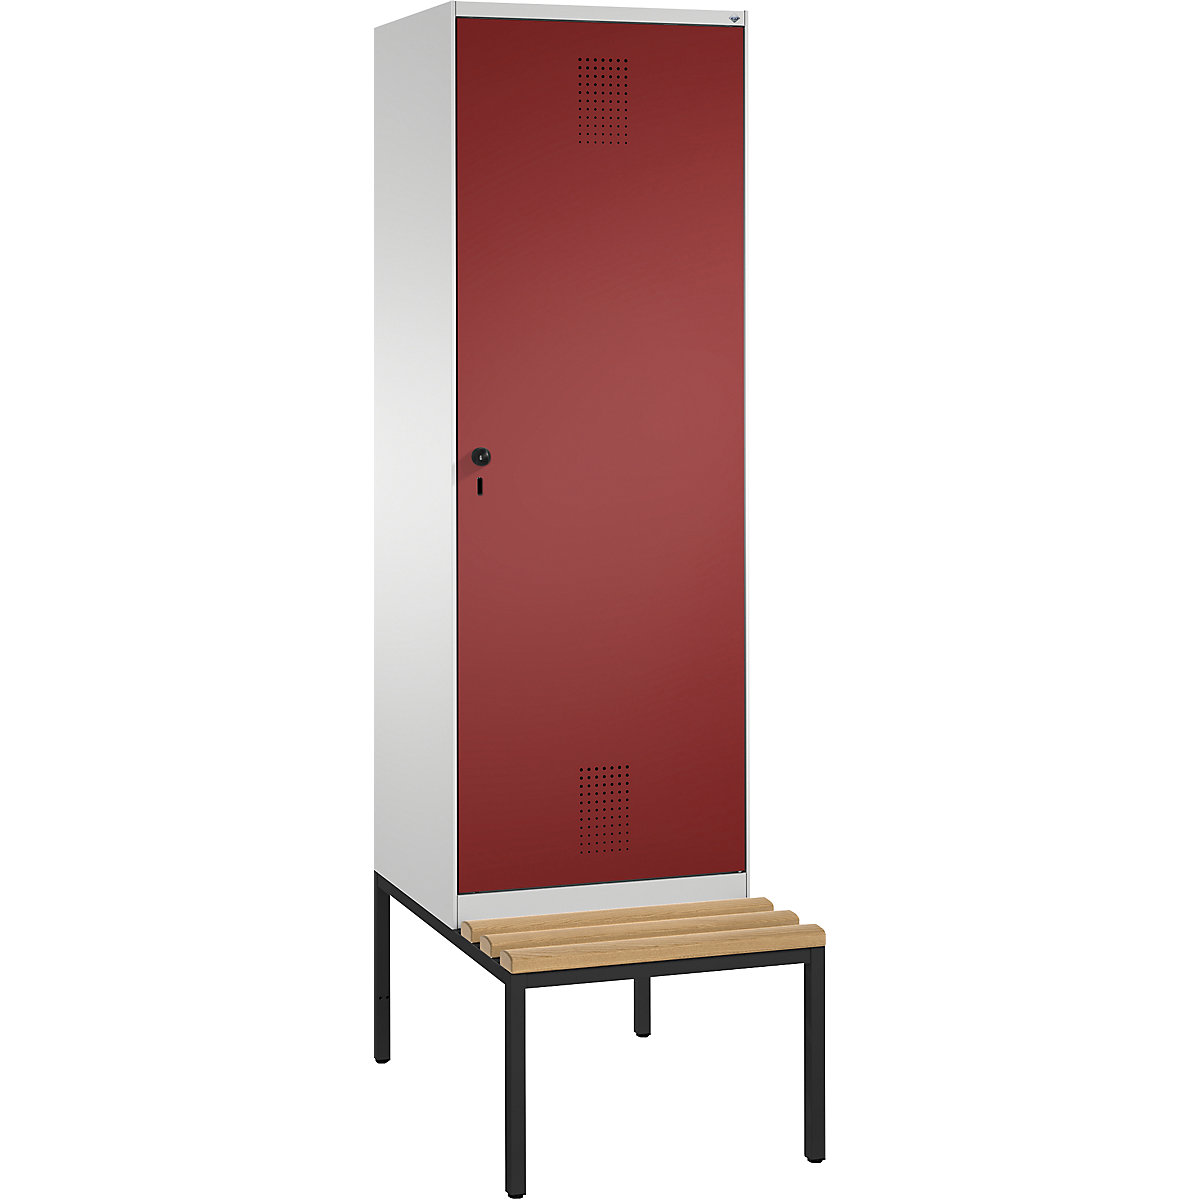 EVOLO Garderobenschrank, mit Sitzbank, Tür über 2 Abteile C+P, 2 Abteile, 1 Tür, Abteilbreite 300 mm, lichtgrau / rubinrot-13